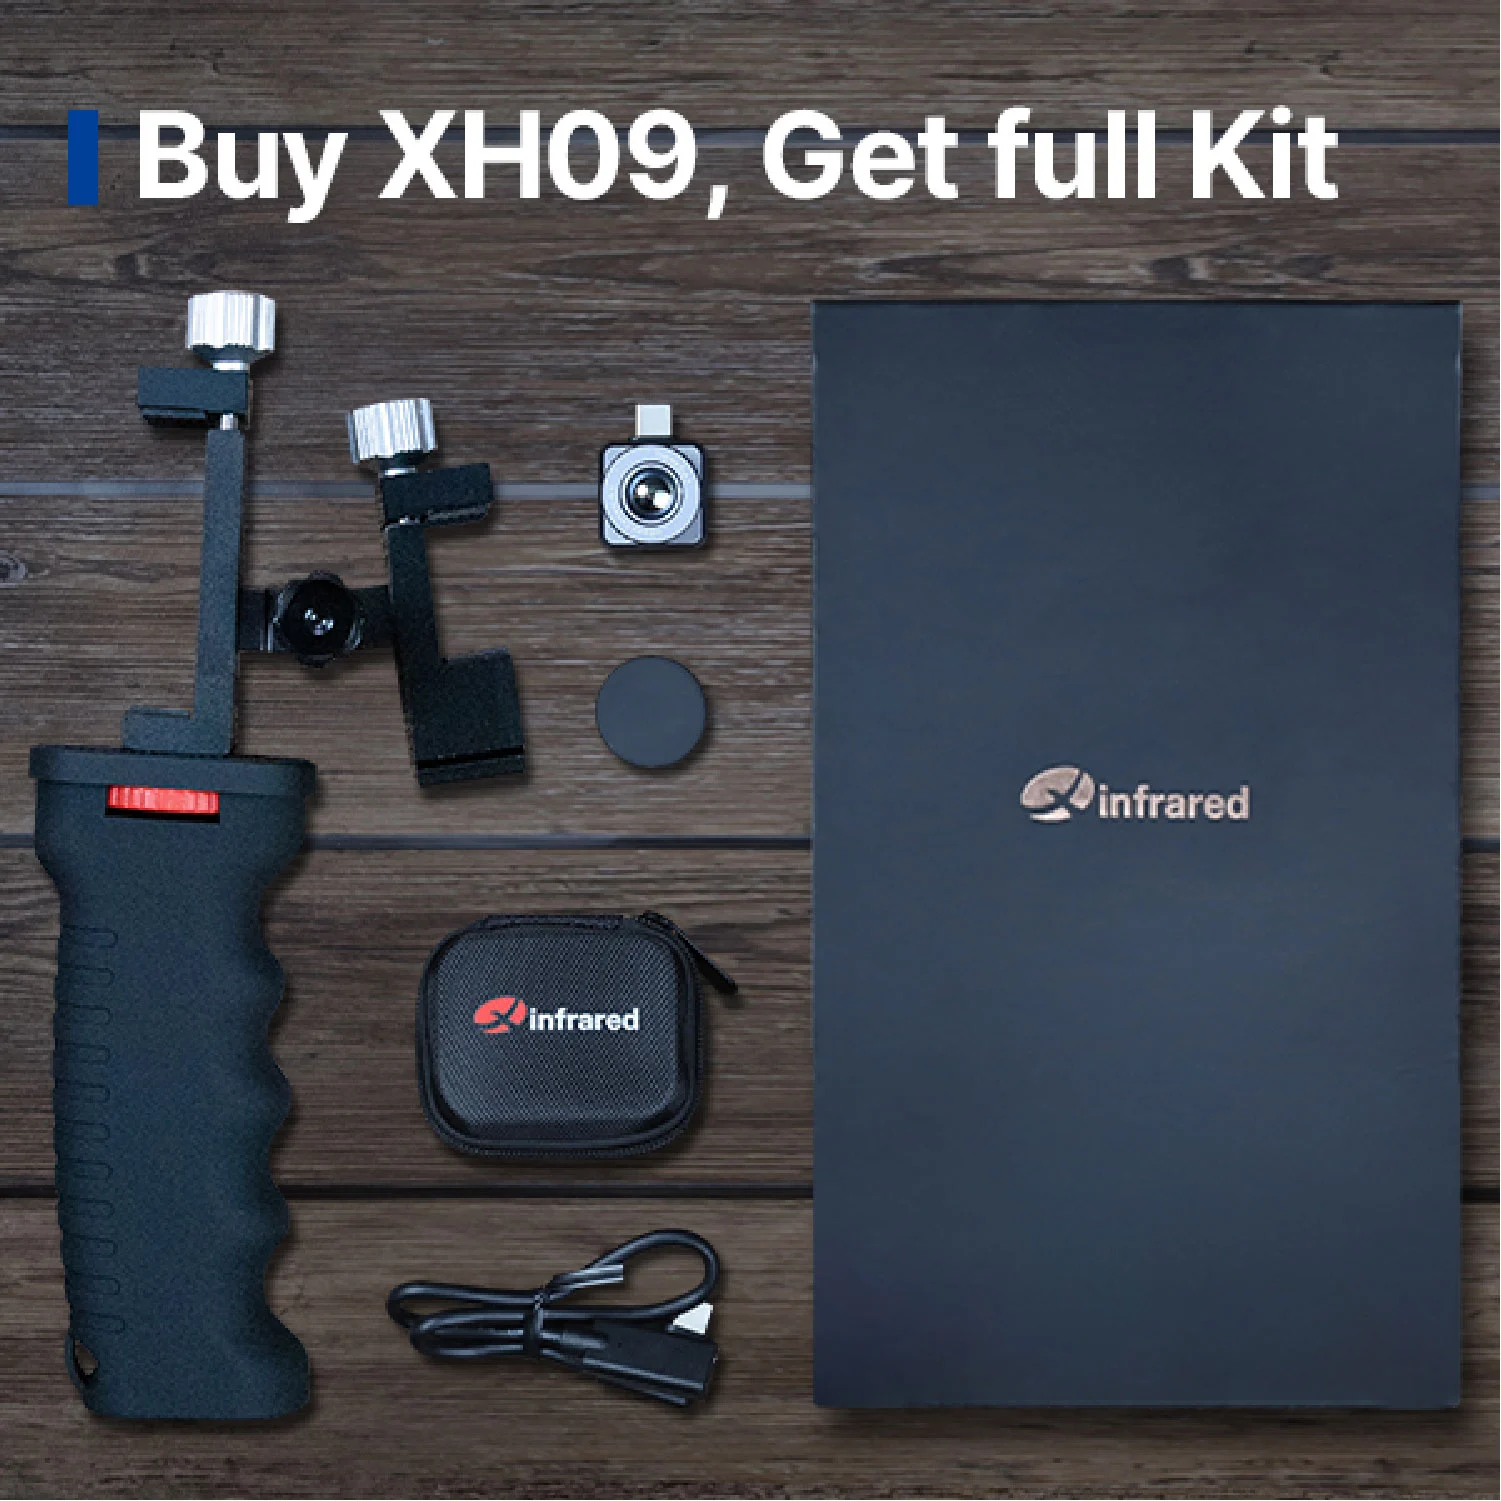 Compre XH09, obtenha kit completo